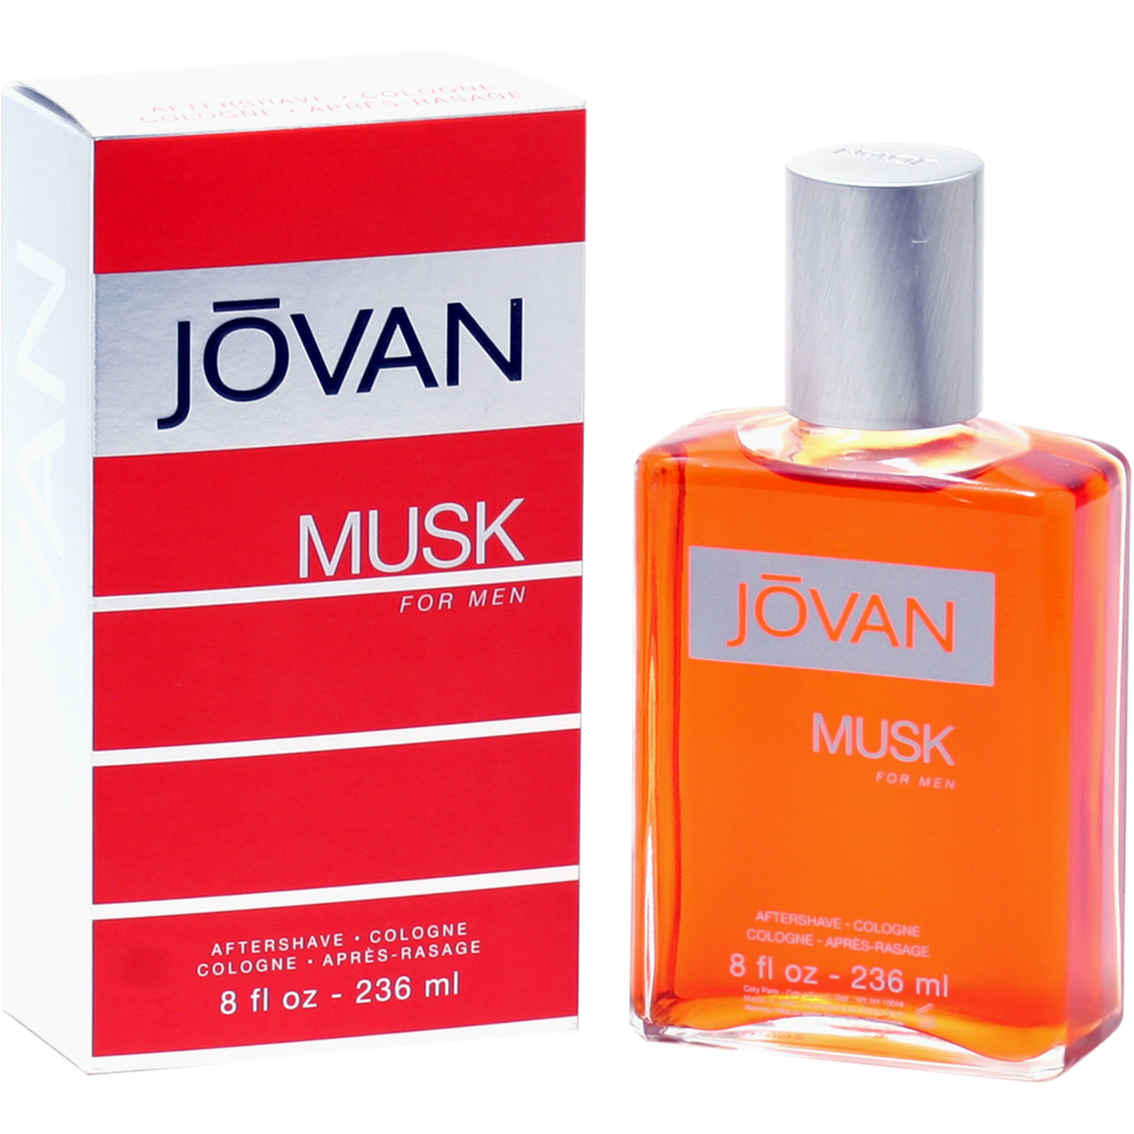 Jovan Musk for Men 8 oz. After Shave Cologne - Image 2 of 2